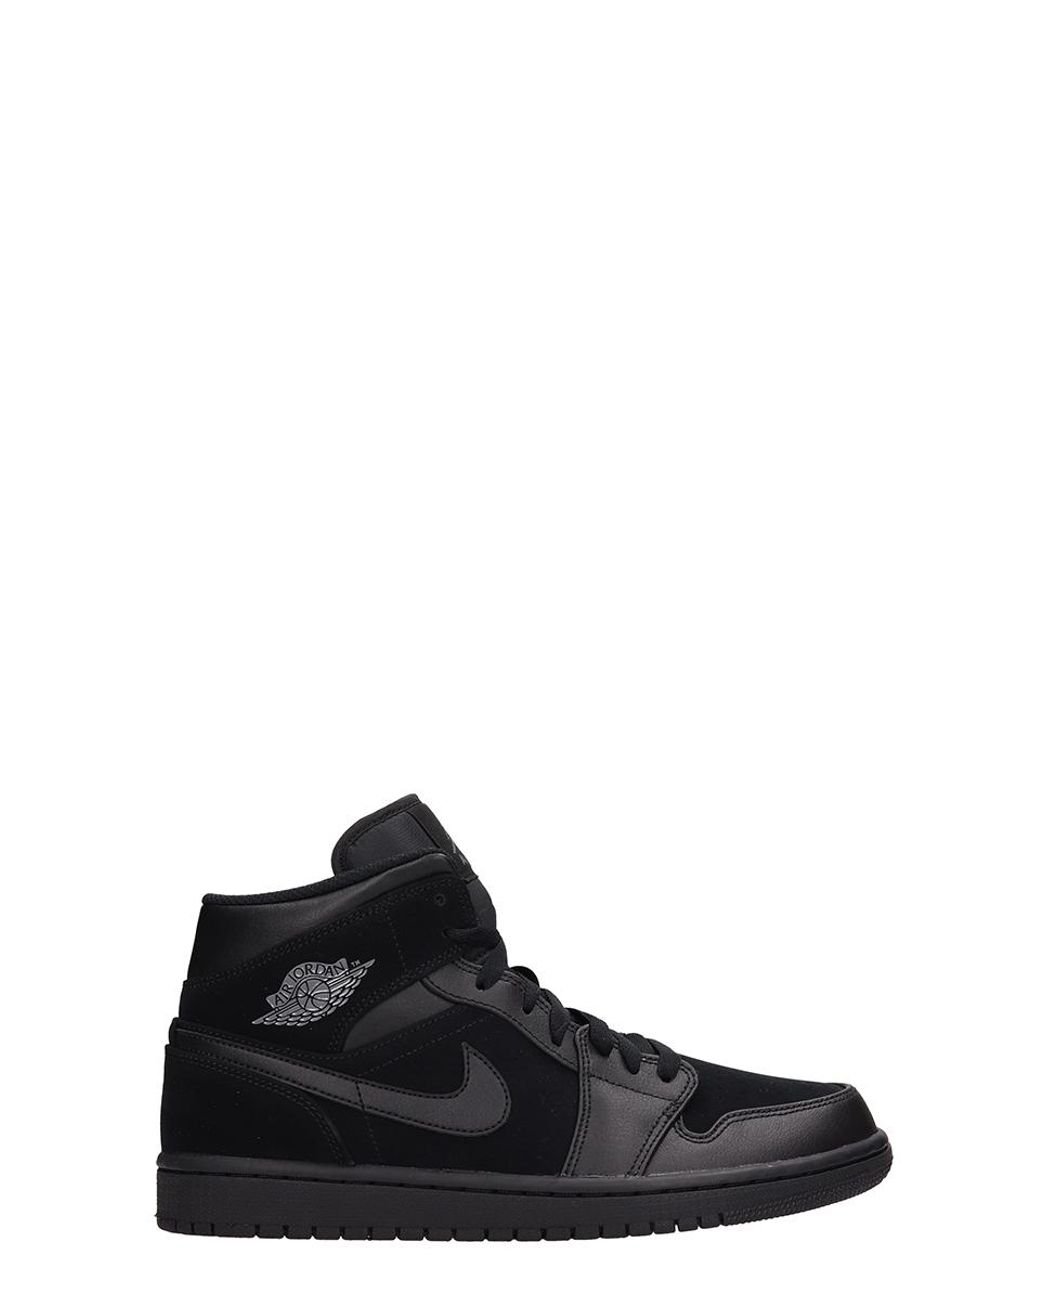 Nike Air Jordan 1 Mid Leather And Suede Sneakers in Men Lyst